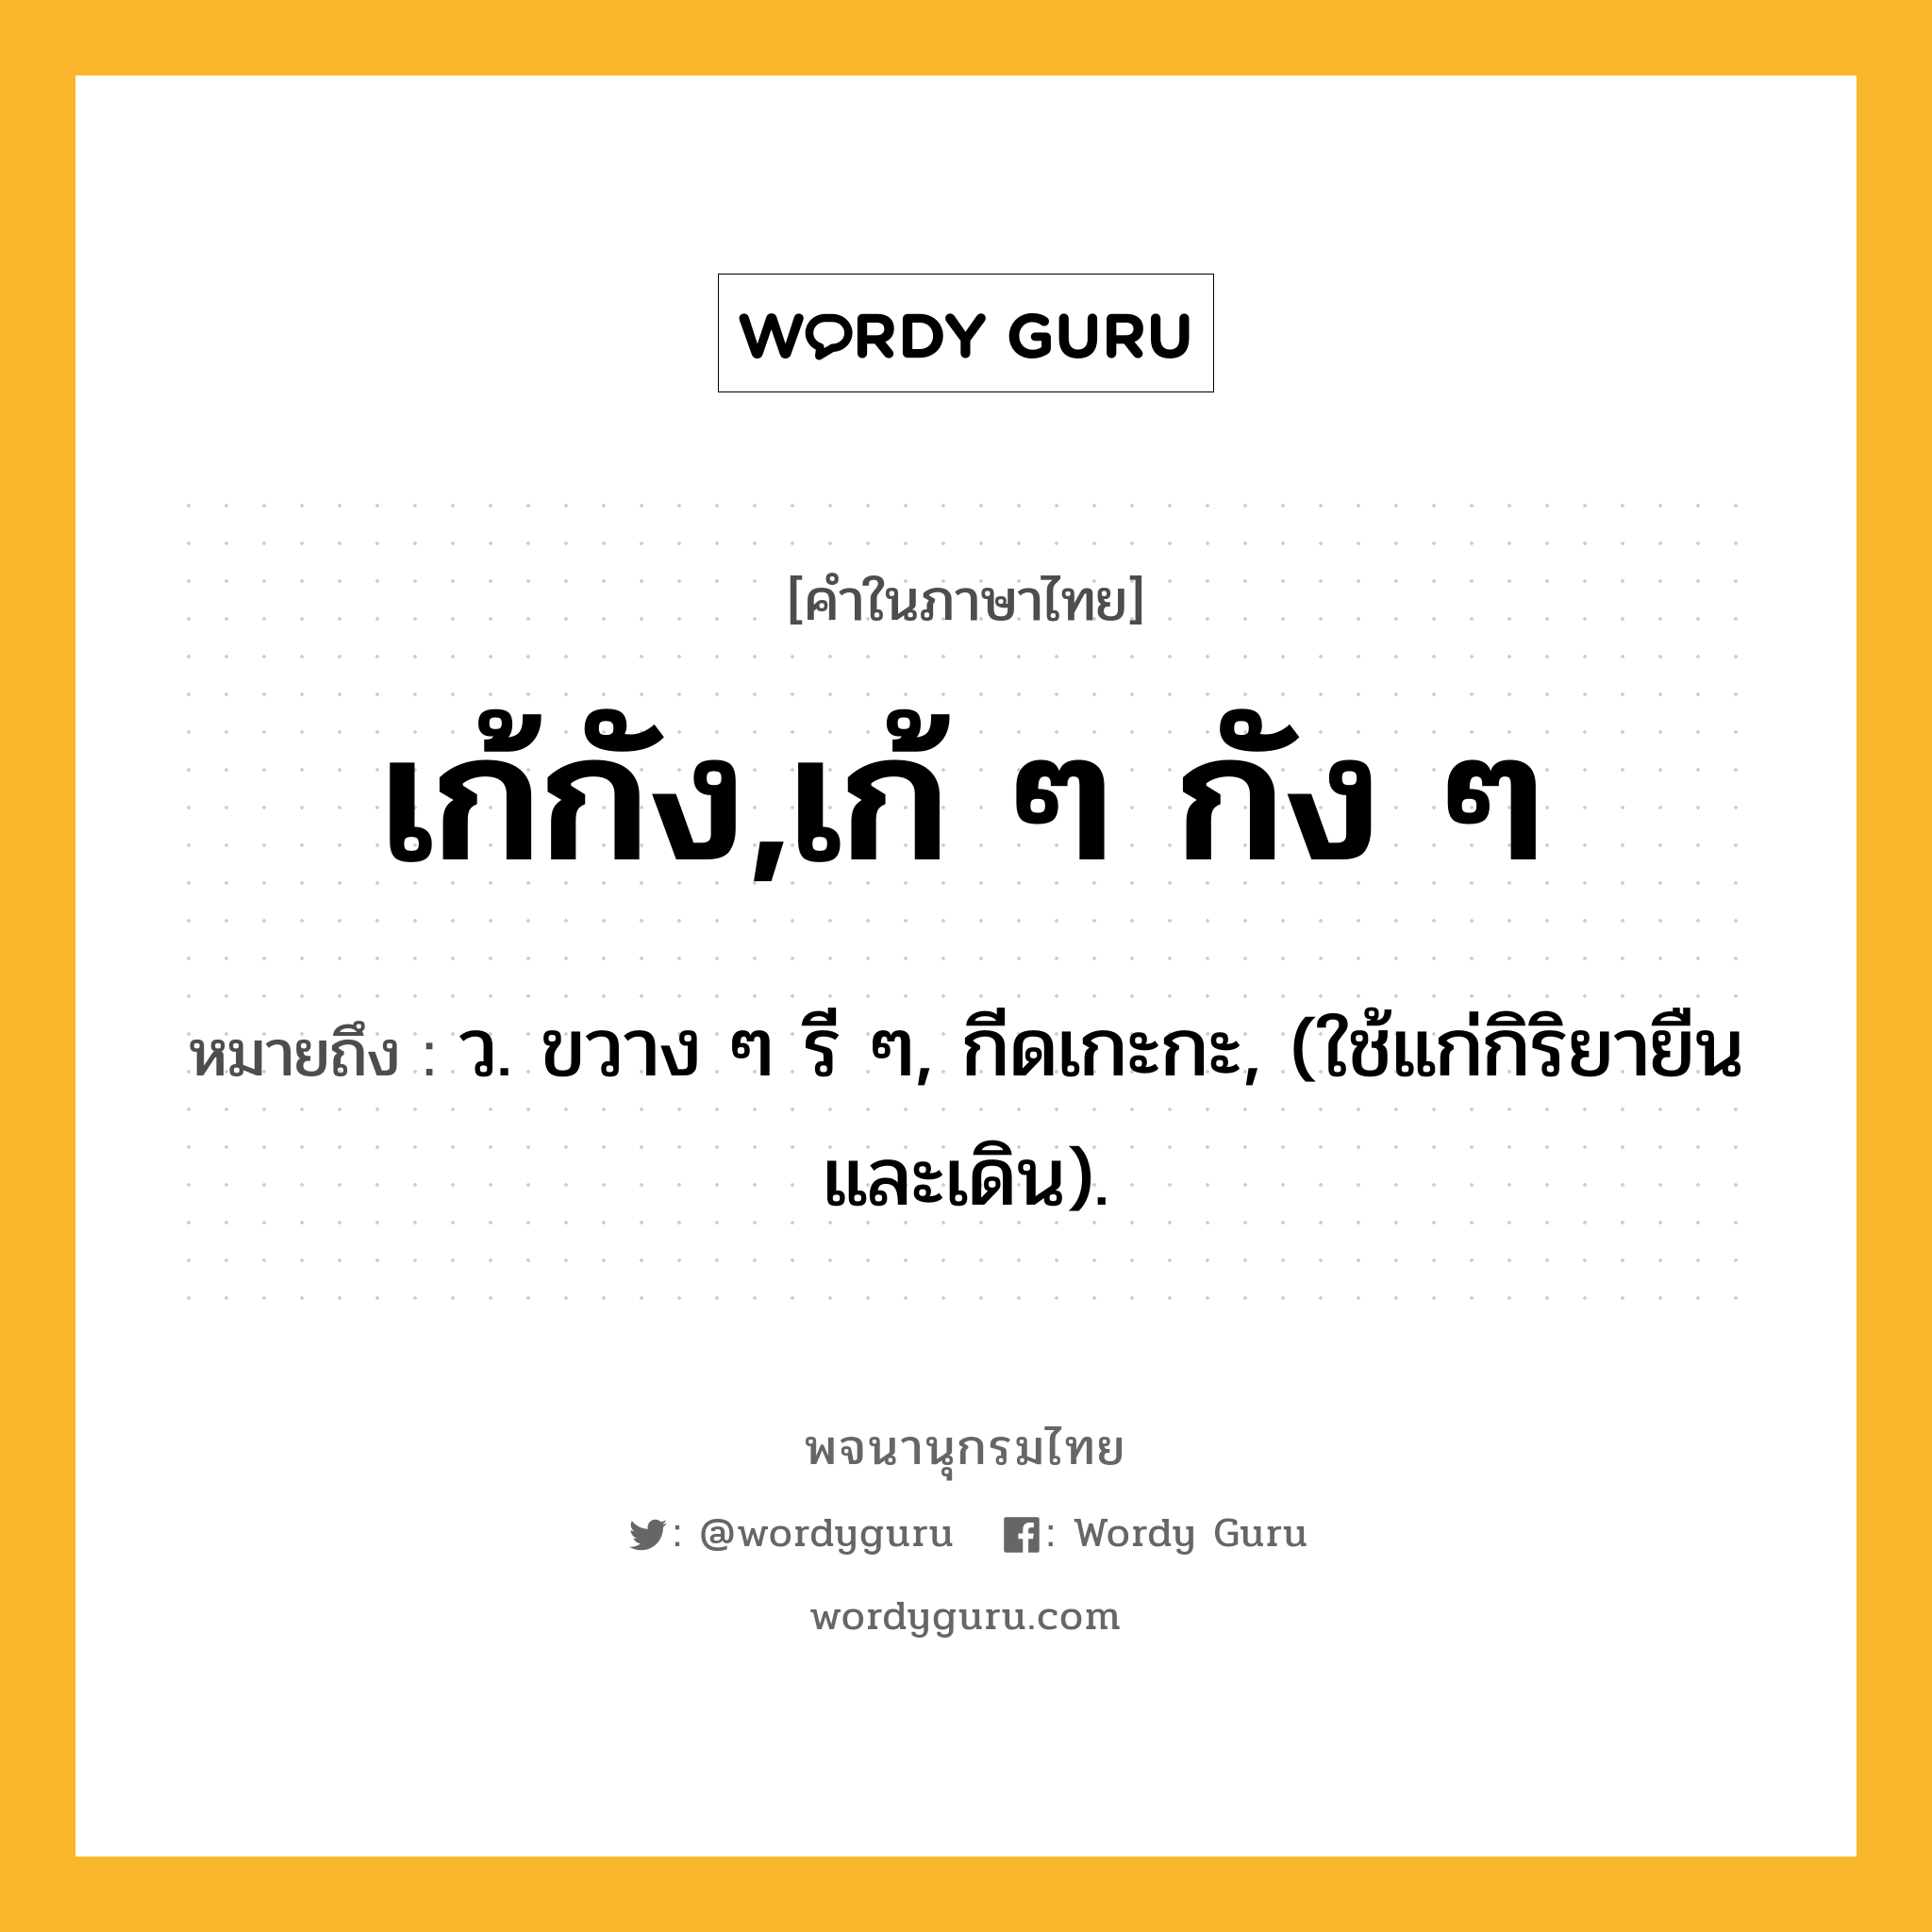 เก้กัง,เก้ ๆ กัง ๆ หมายถึงอะไร?, คำในภาษาไทย เก้กัง,เก้ ๆ กัง ๆ หมายถึง ว. ขวาง ๆ รี ๆ, กีดเกะกะ, (ใช้แก่กิริยายืนและเดิน).